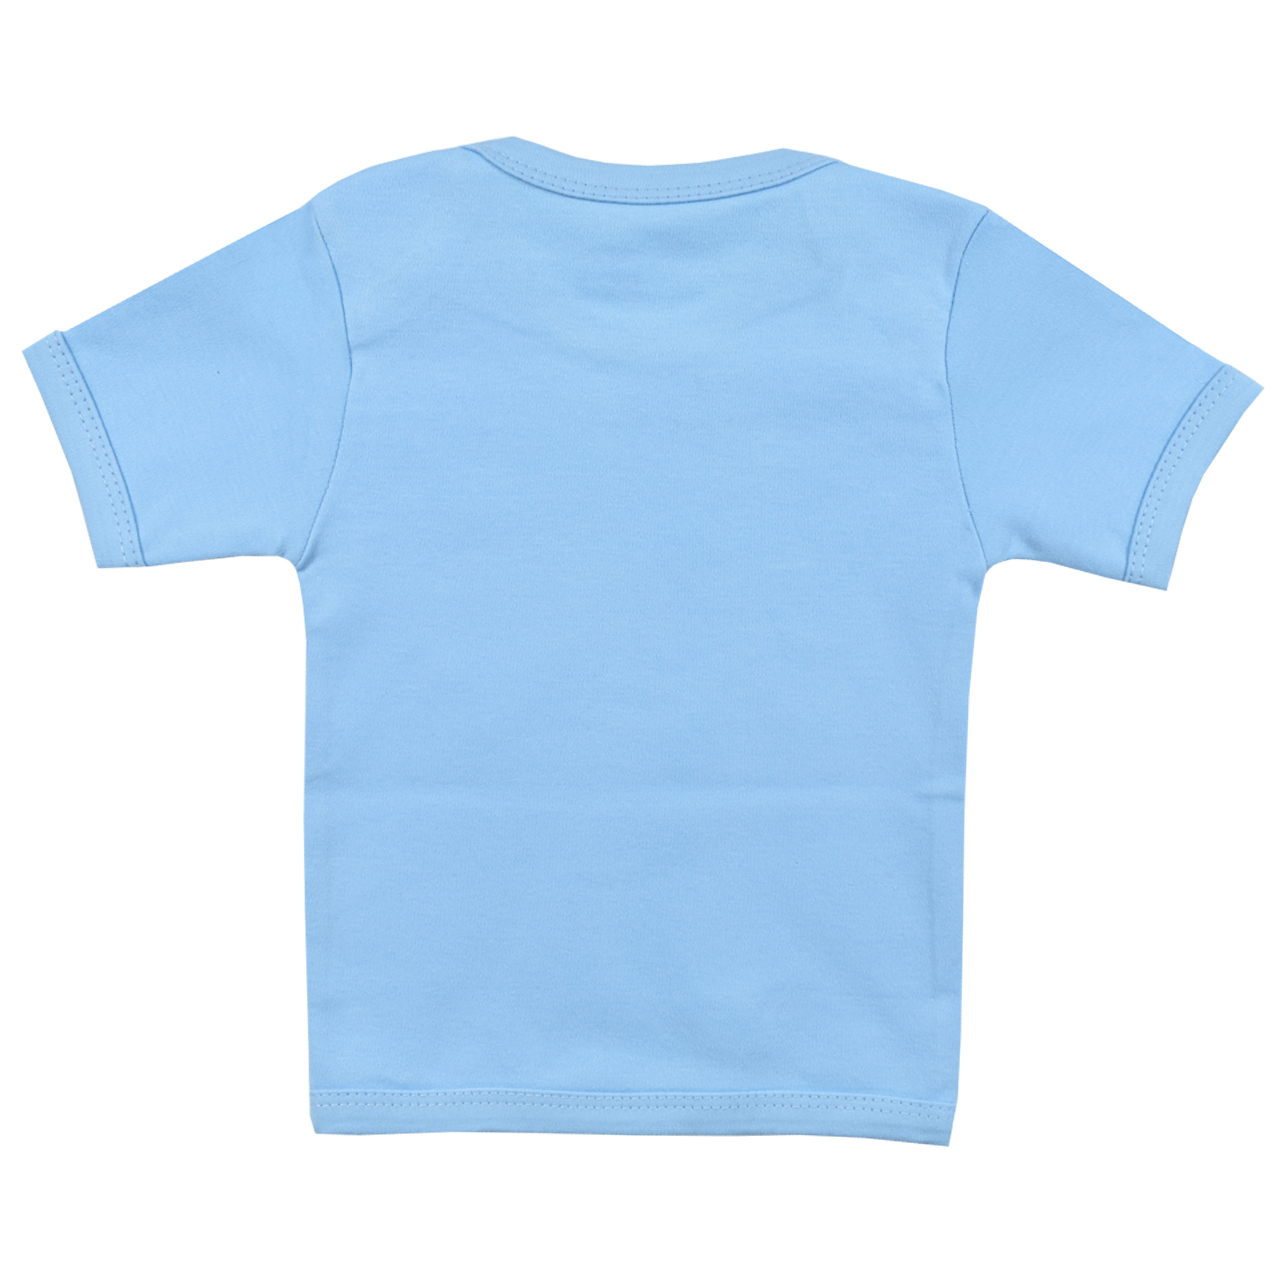 تی شرت آستین کوتاه نوزادی اسپیکو کد 300 -3 بسته دو عددی -  - 2